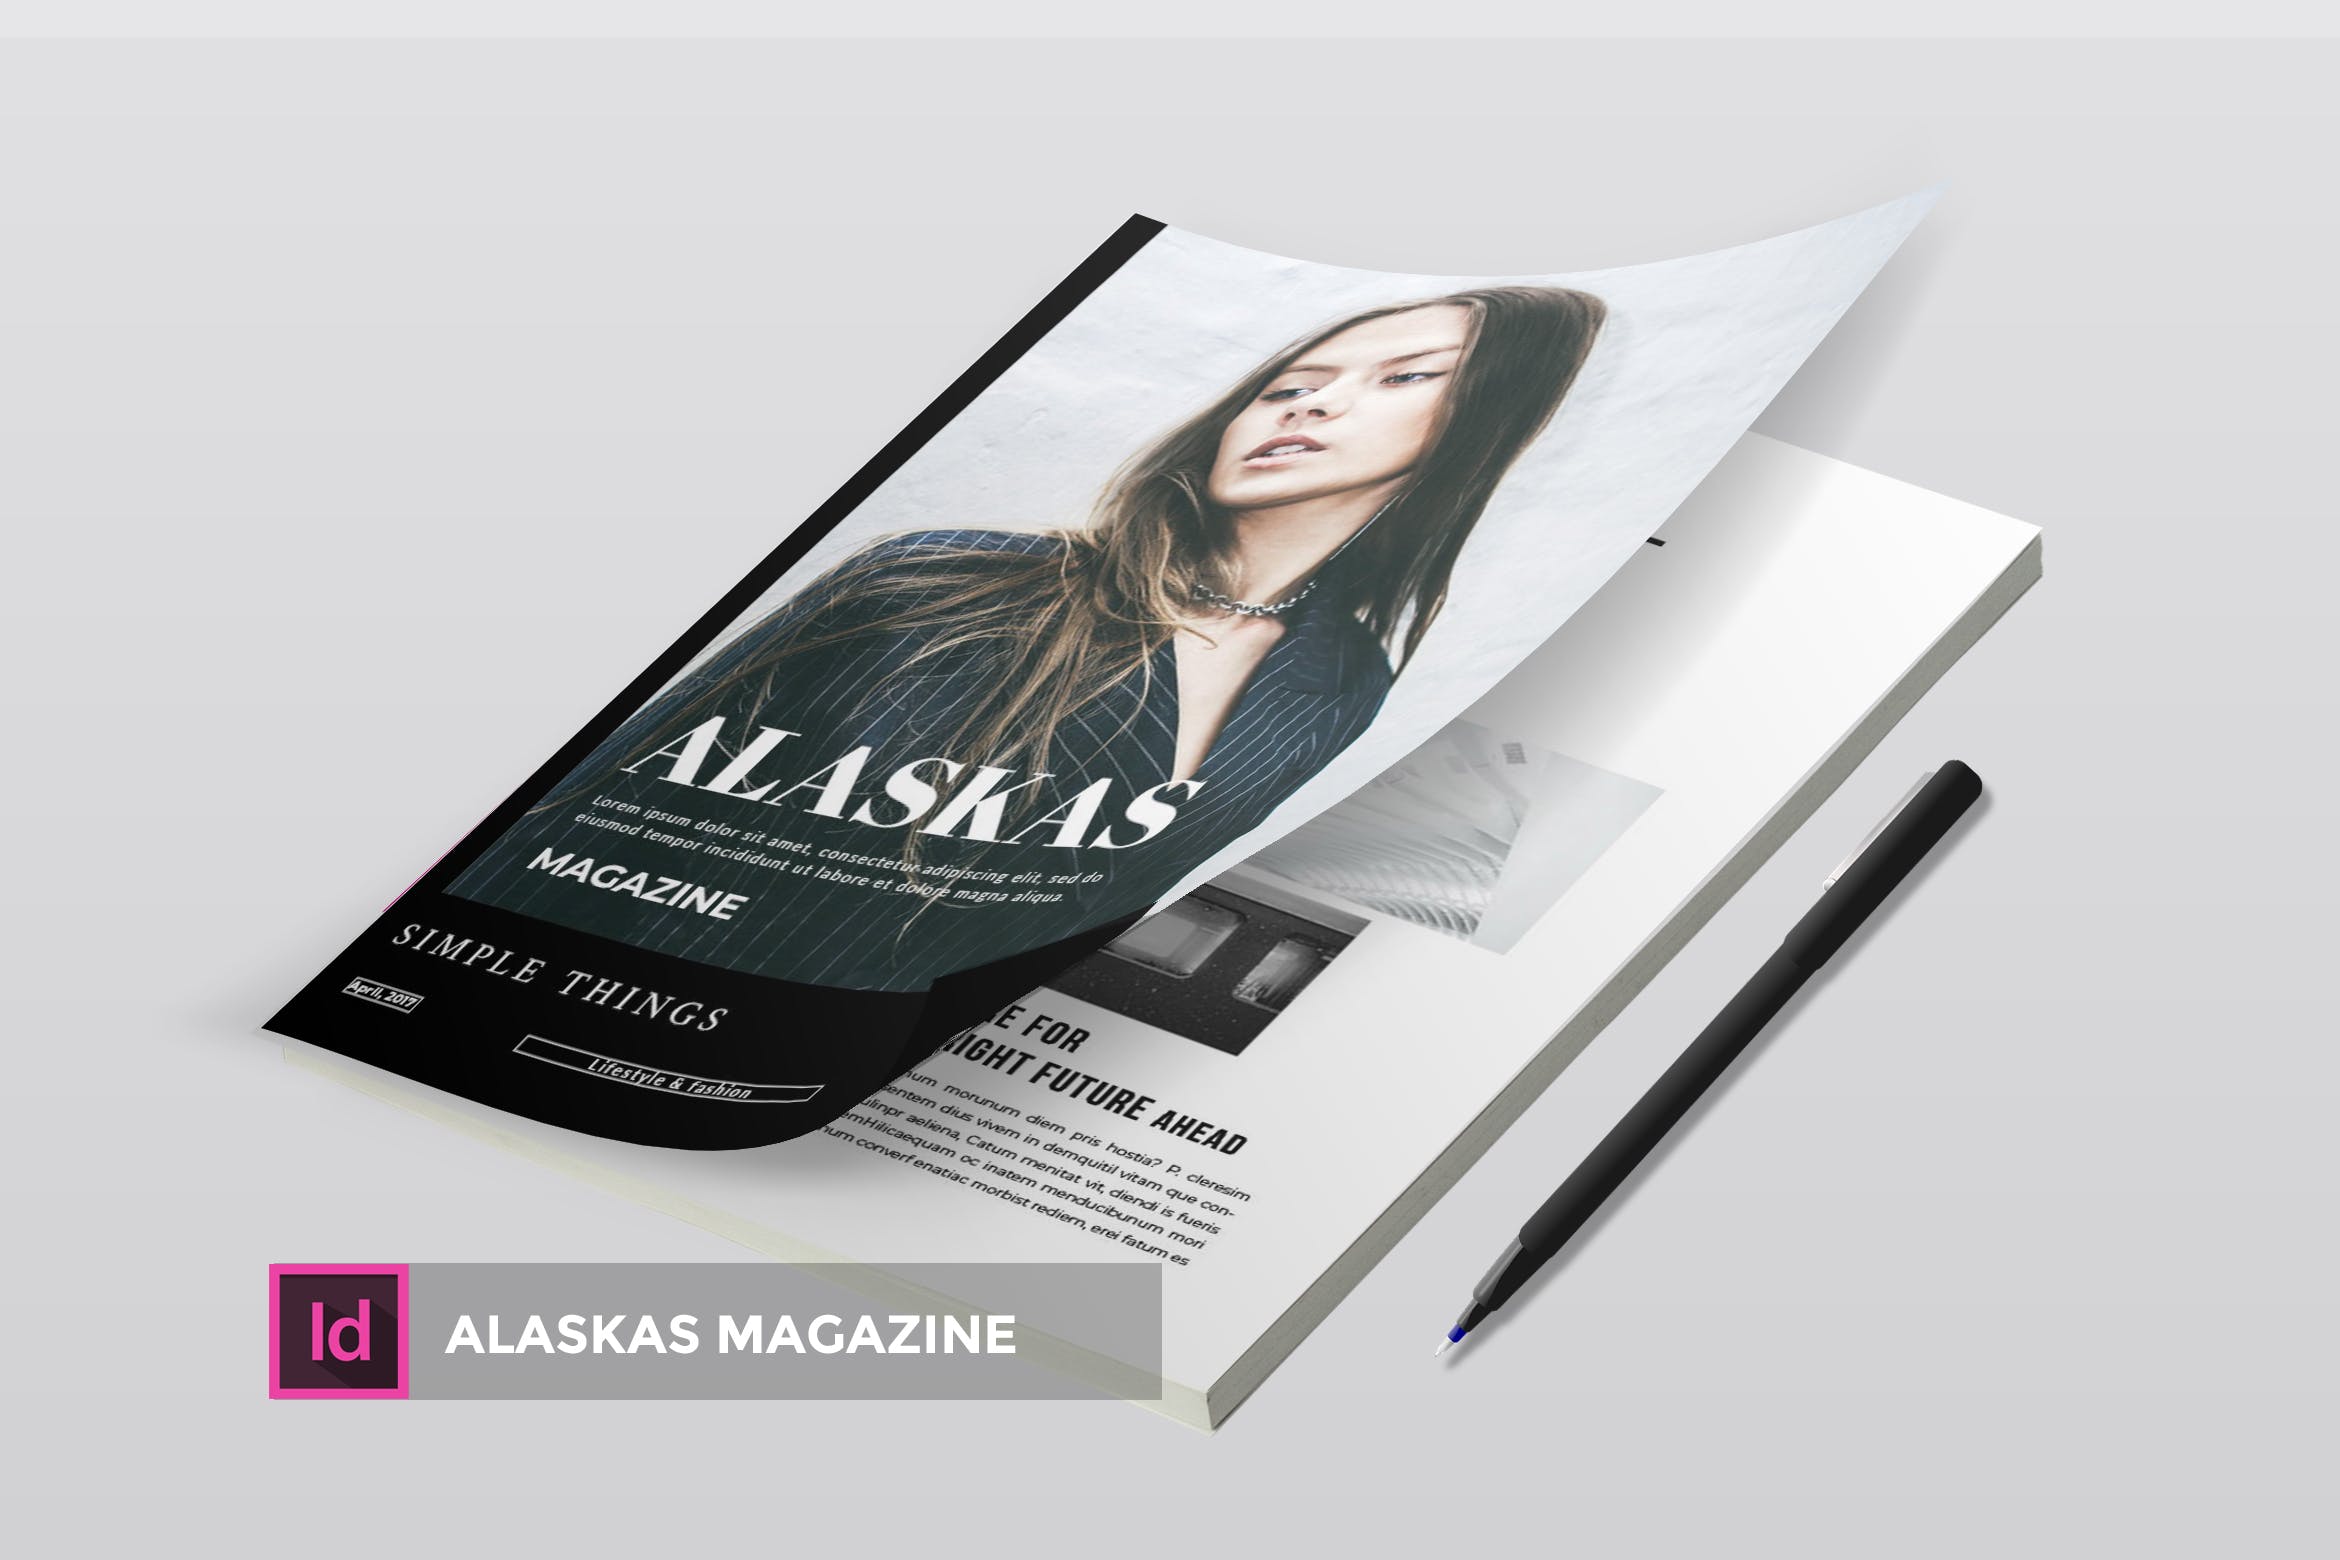 高端人物/服装/访谈主题大洋岛精选杂志版式排版设计INDD模板 Alaskas | Magazine Template插图